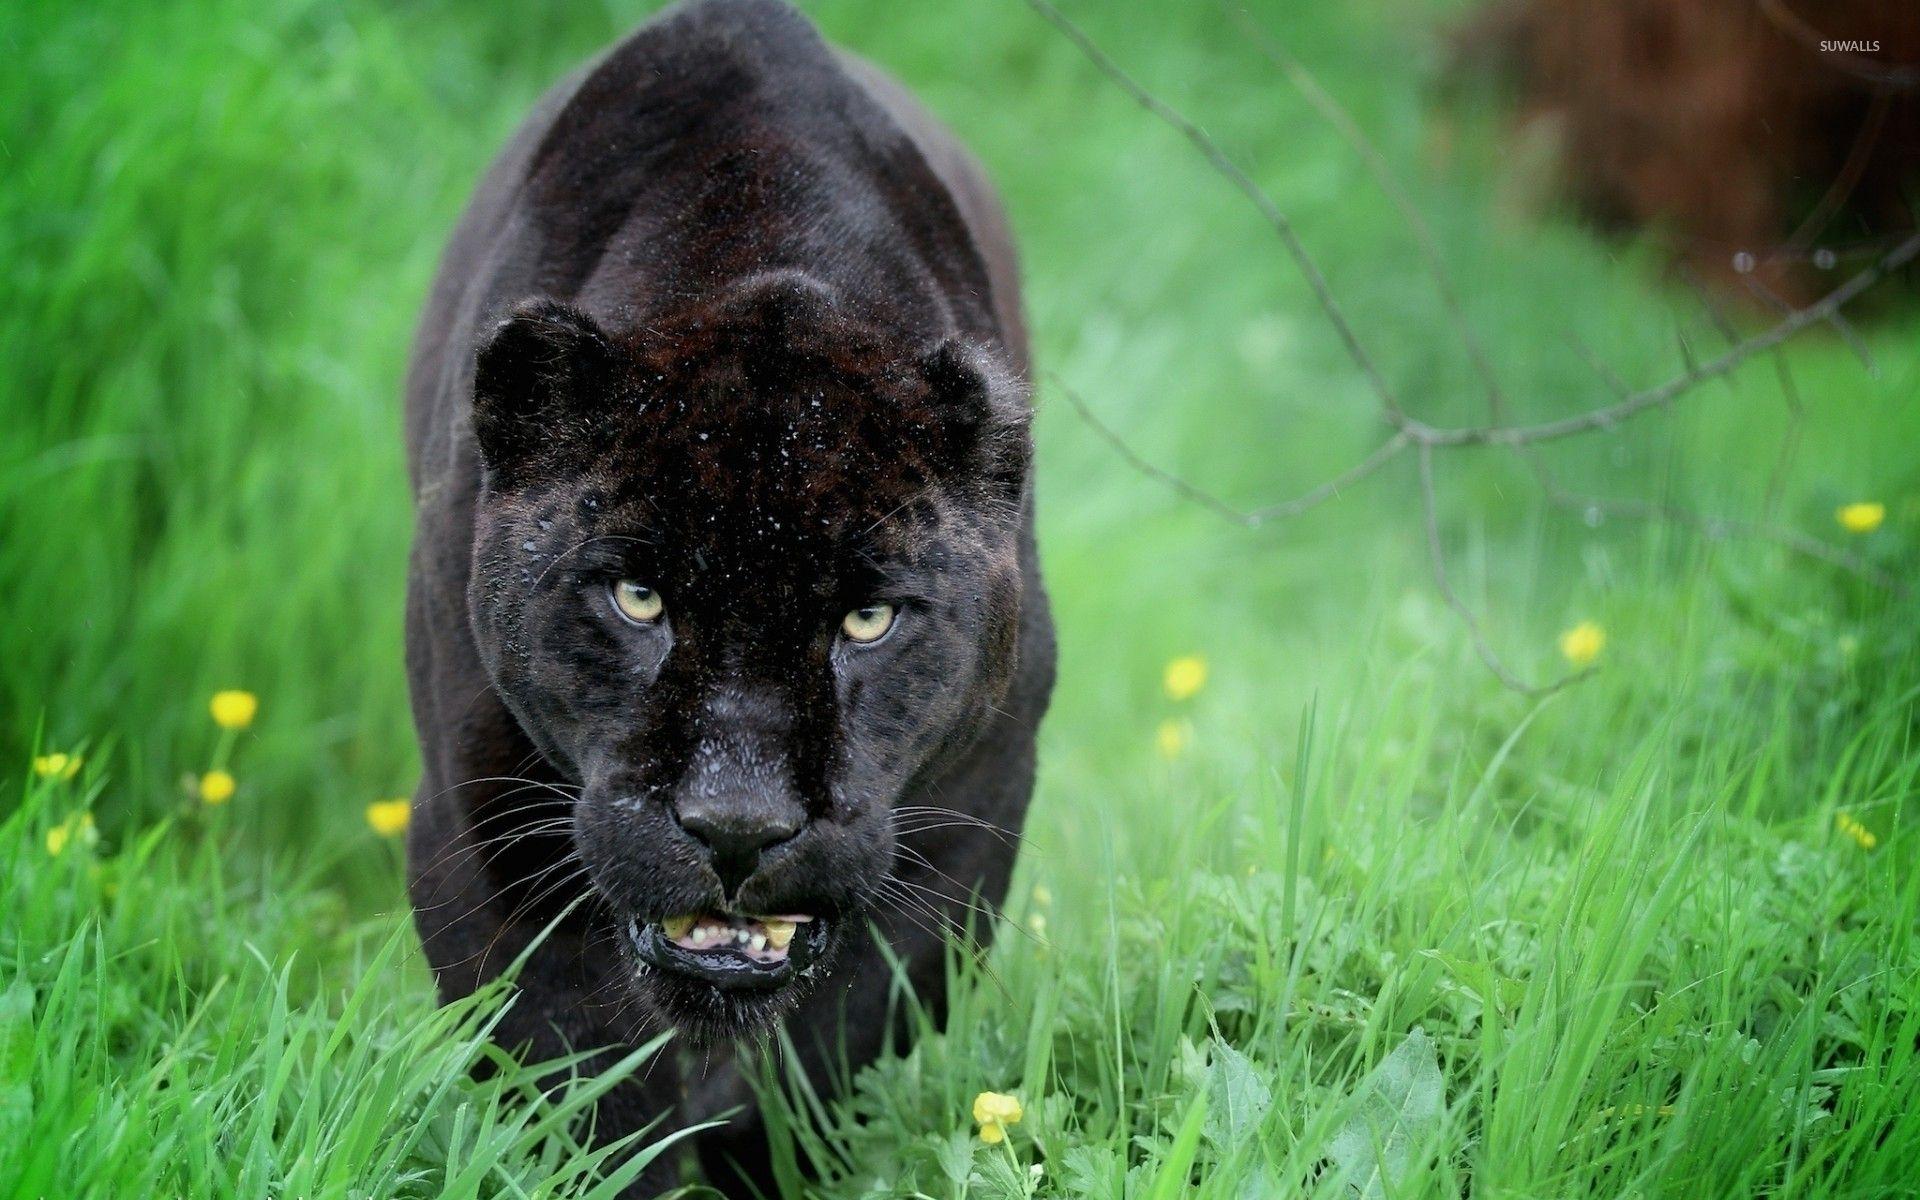  Black  Panther  Animal  Wallpapers  Top Free Black  Panther  